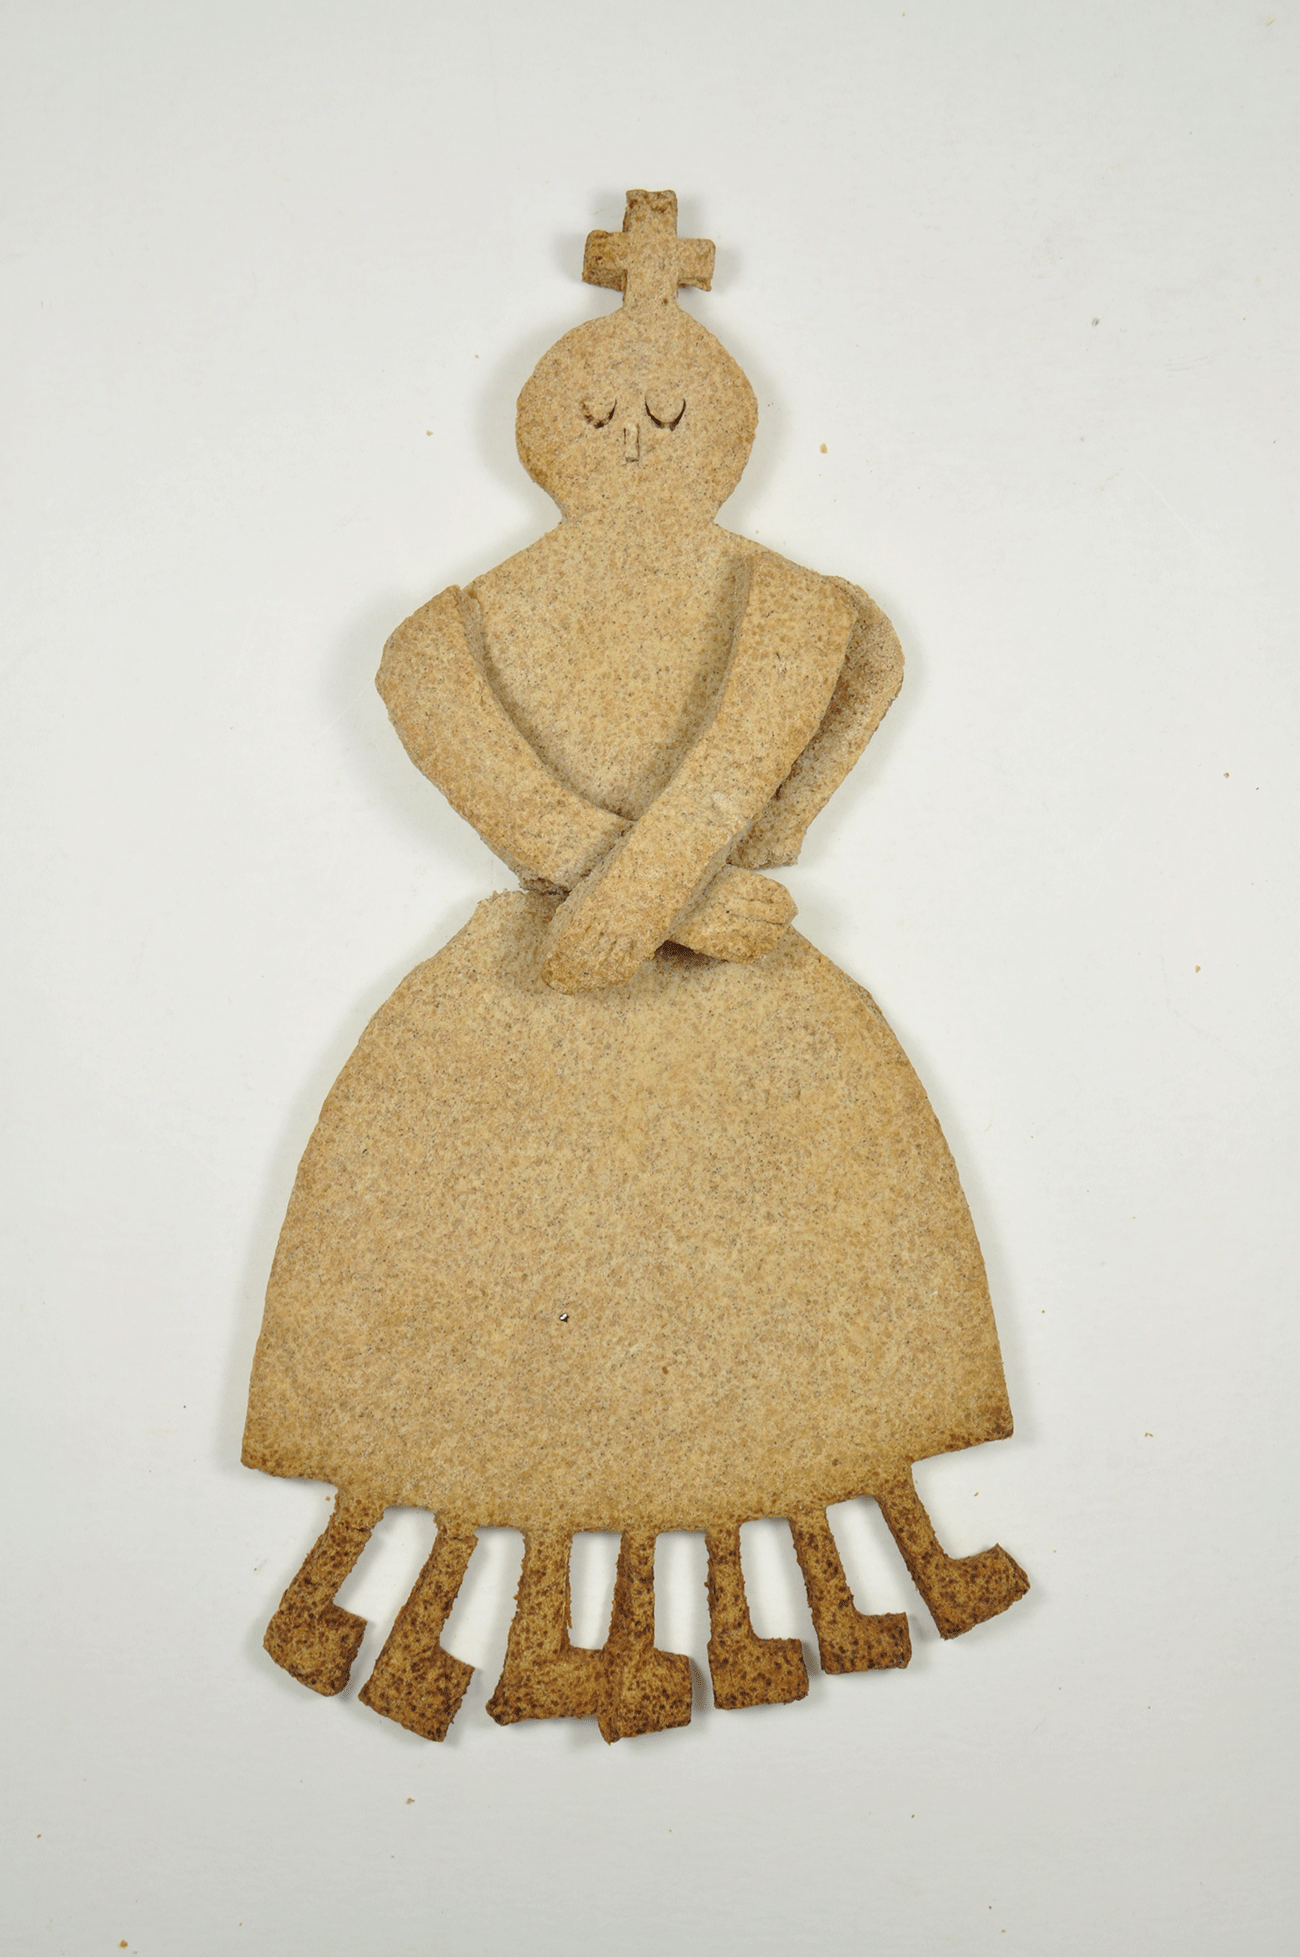 Dame Carême, Pâte à pain, Grèce, Entre 1995-1999 © Mucem